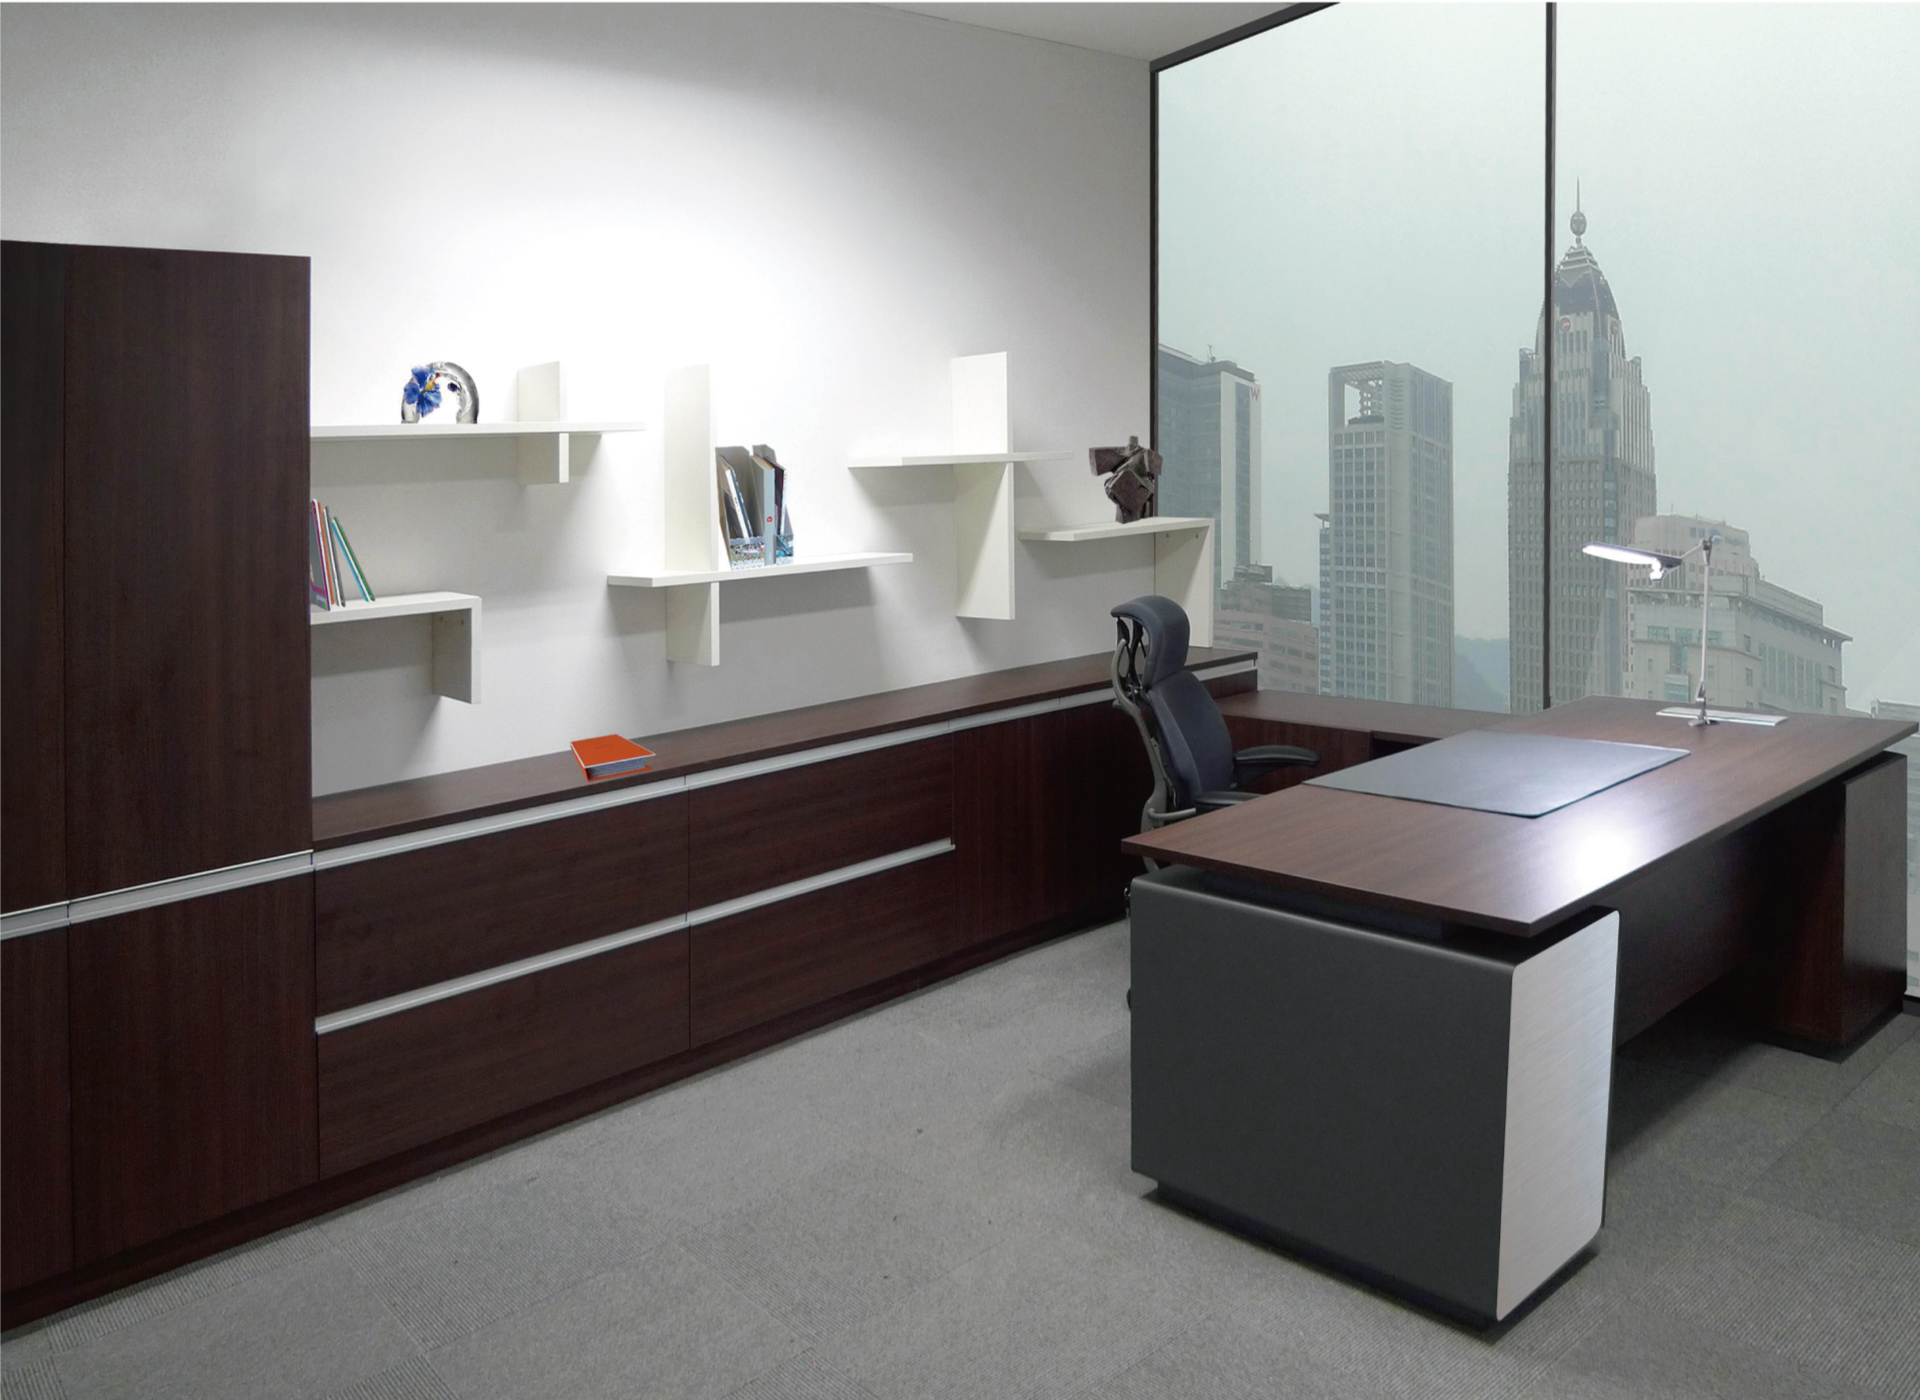 Ооо мебель отзывы. Офисная мебель. Инновационная мебель для офиса. Инновации в мебели. Инновационная мебель для сотрудников.